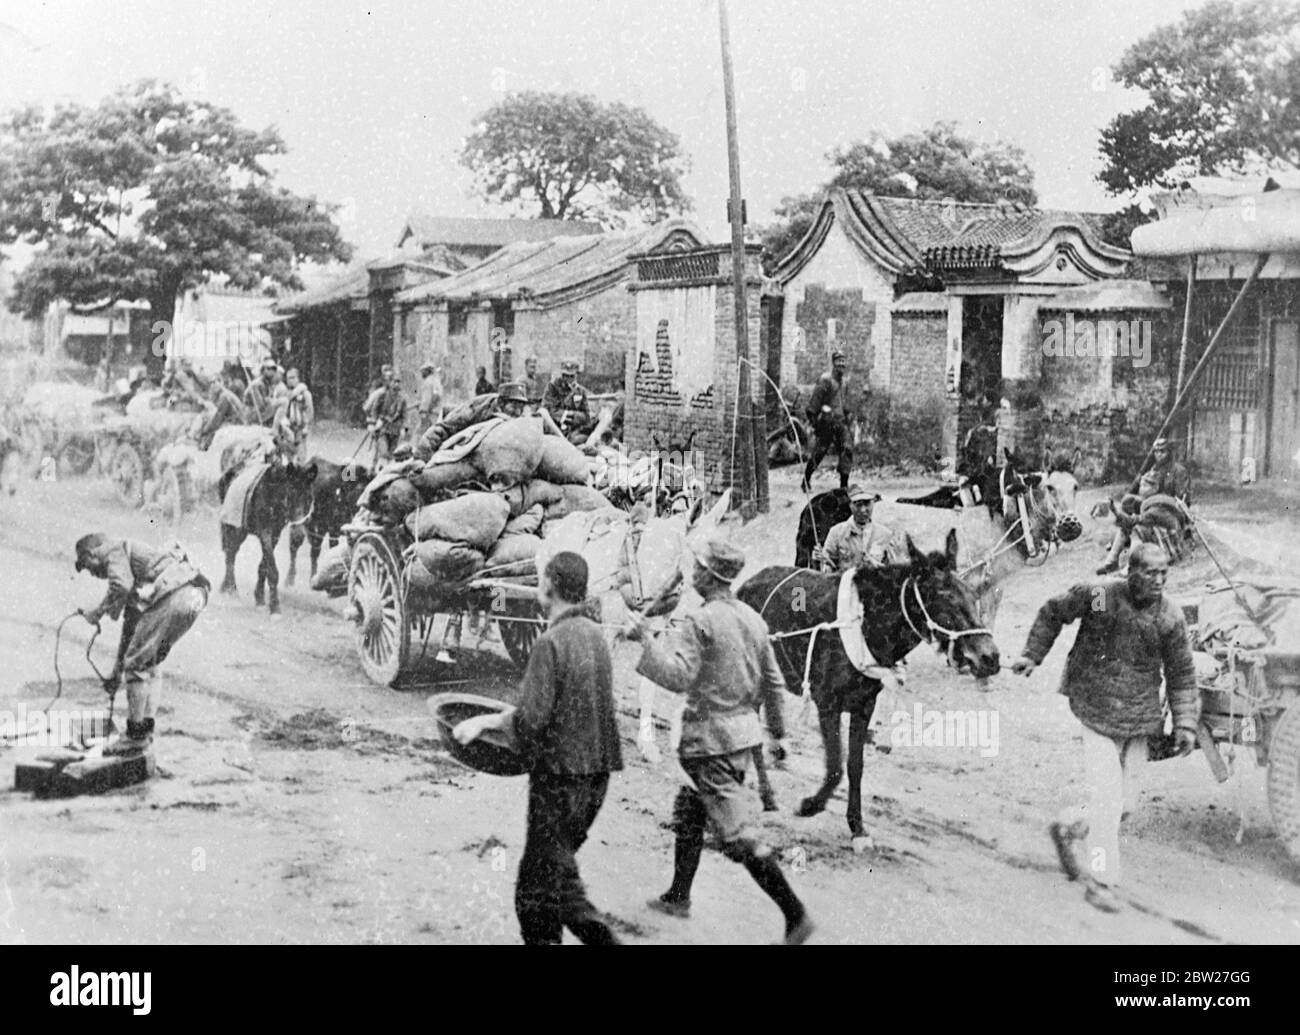 Hunderte von Flüchtlingen fliehen aus der Stadt, während sich derzeit heftige Kämpfe zwischen chinesischen und japanischen Truppen vor den Toren Pekins befinden. Die Japaner sollen sich nach verzweifelten Hand-zu-Hand-Kämpfen zurückgezogen haben, aber zehntausend weitere Truppen sind unterwegs gemeldet. 13 Juli 1937. Stockfoto